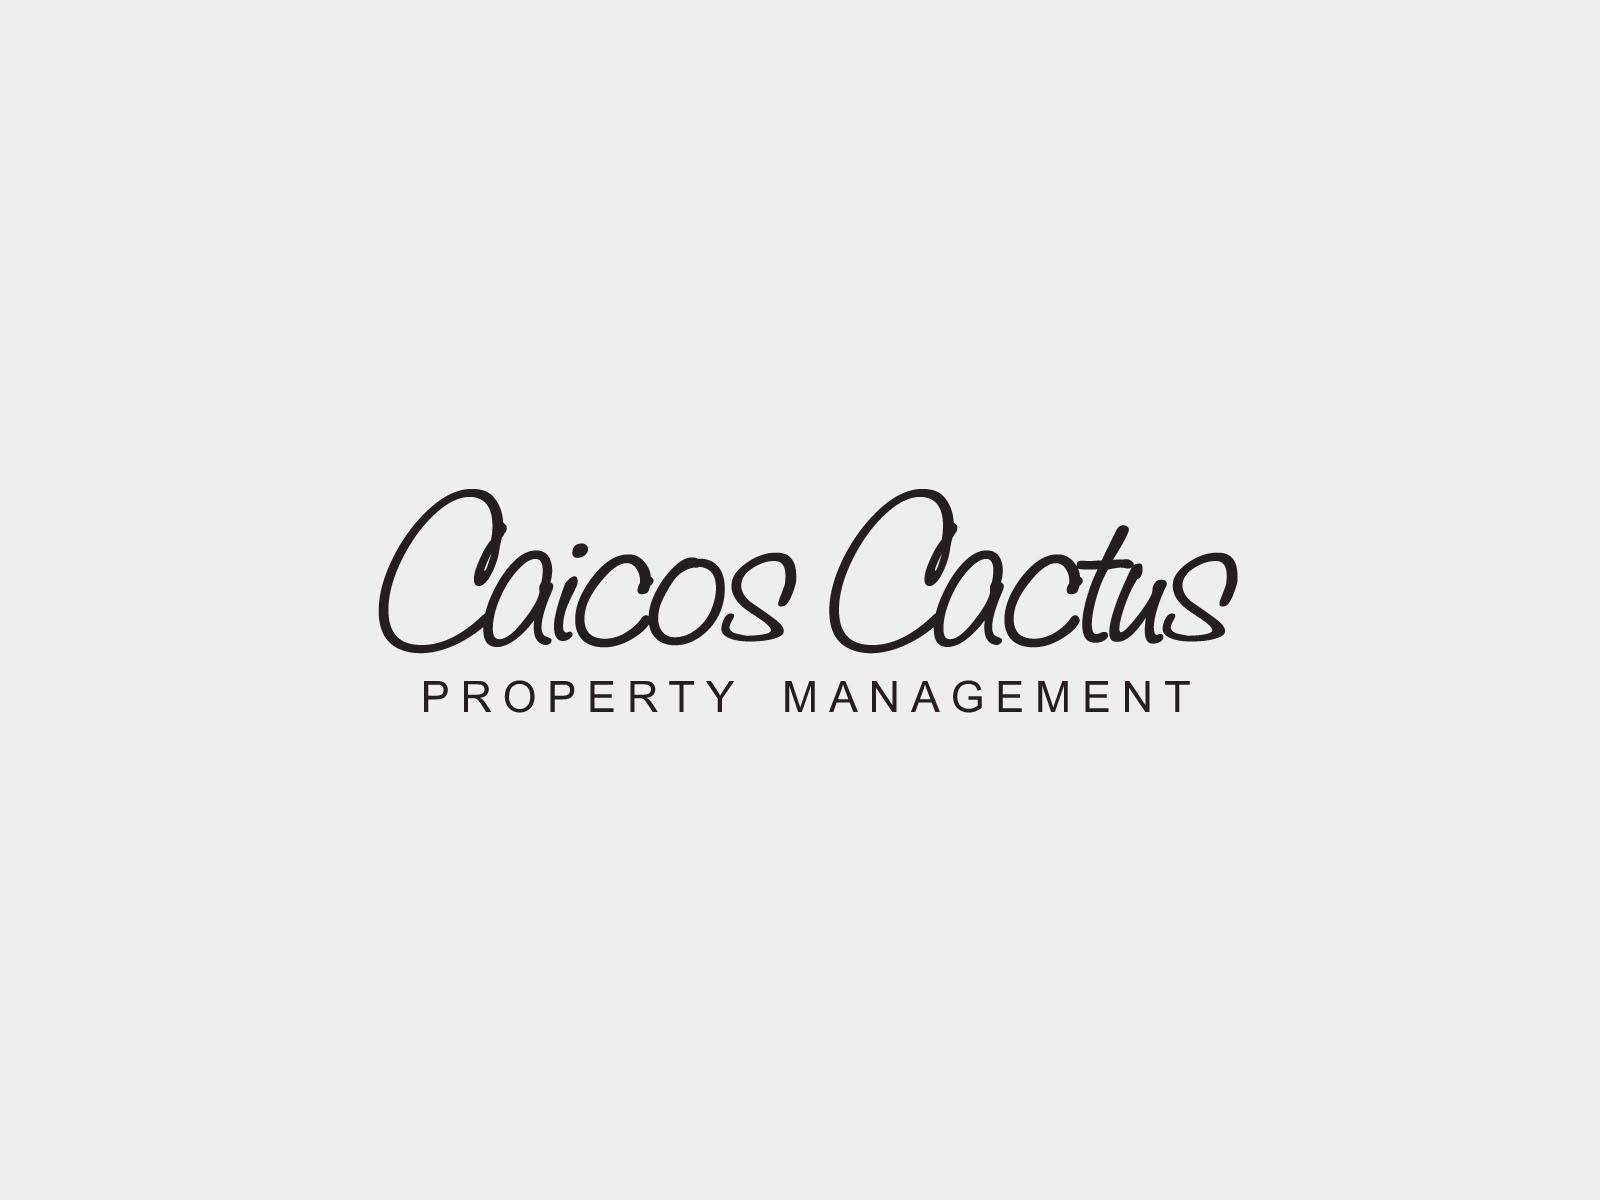 Caicos Cactus